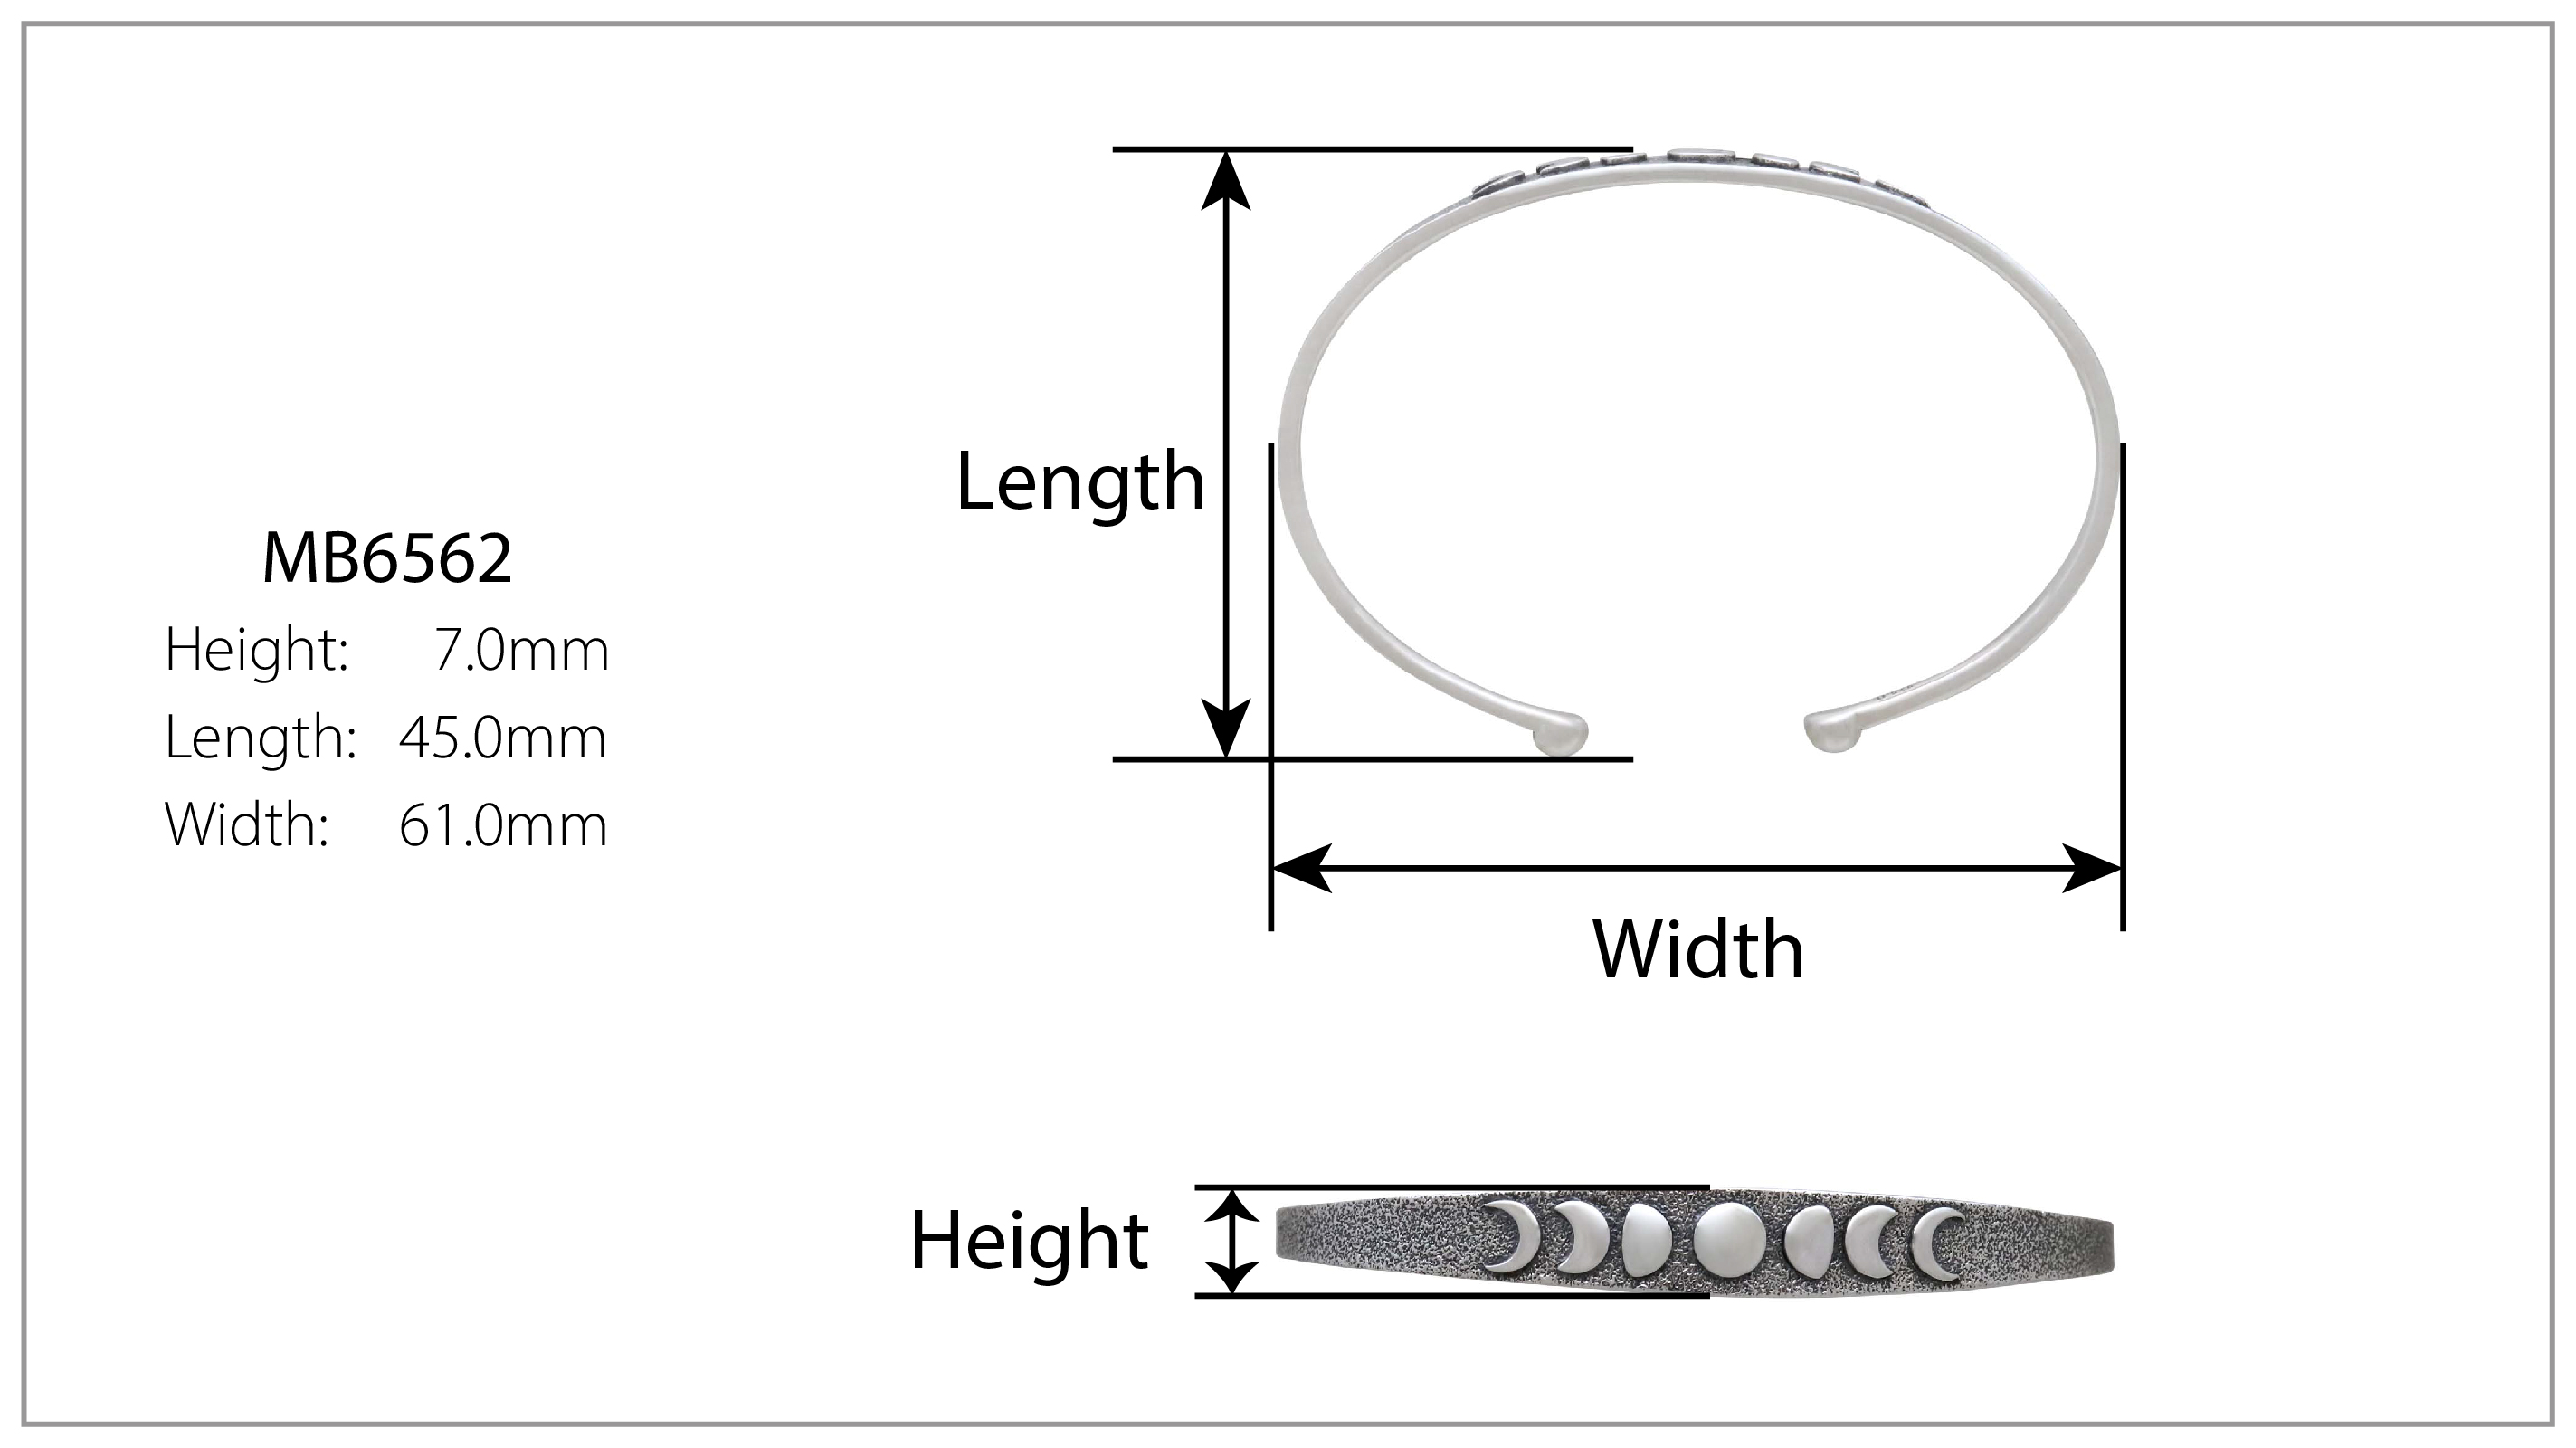 Bracelet Measurements